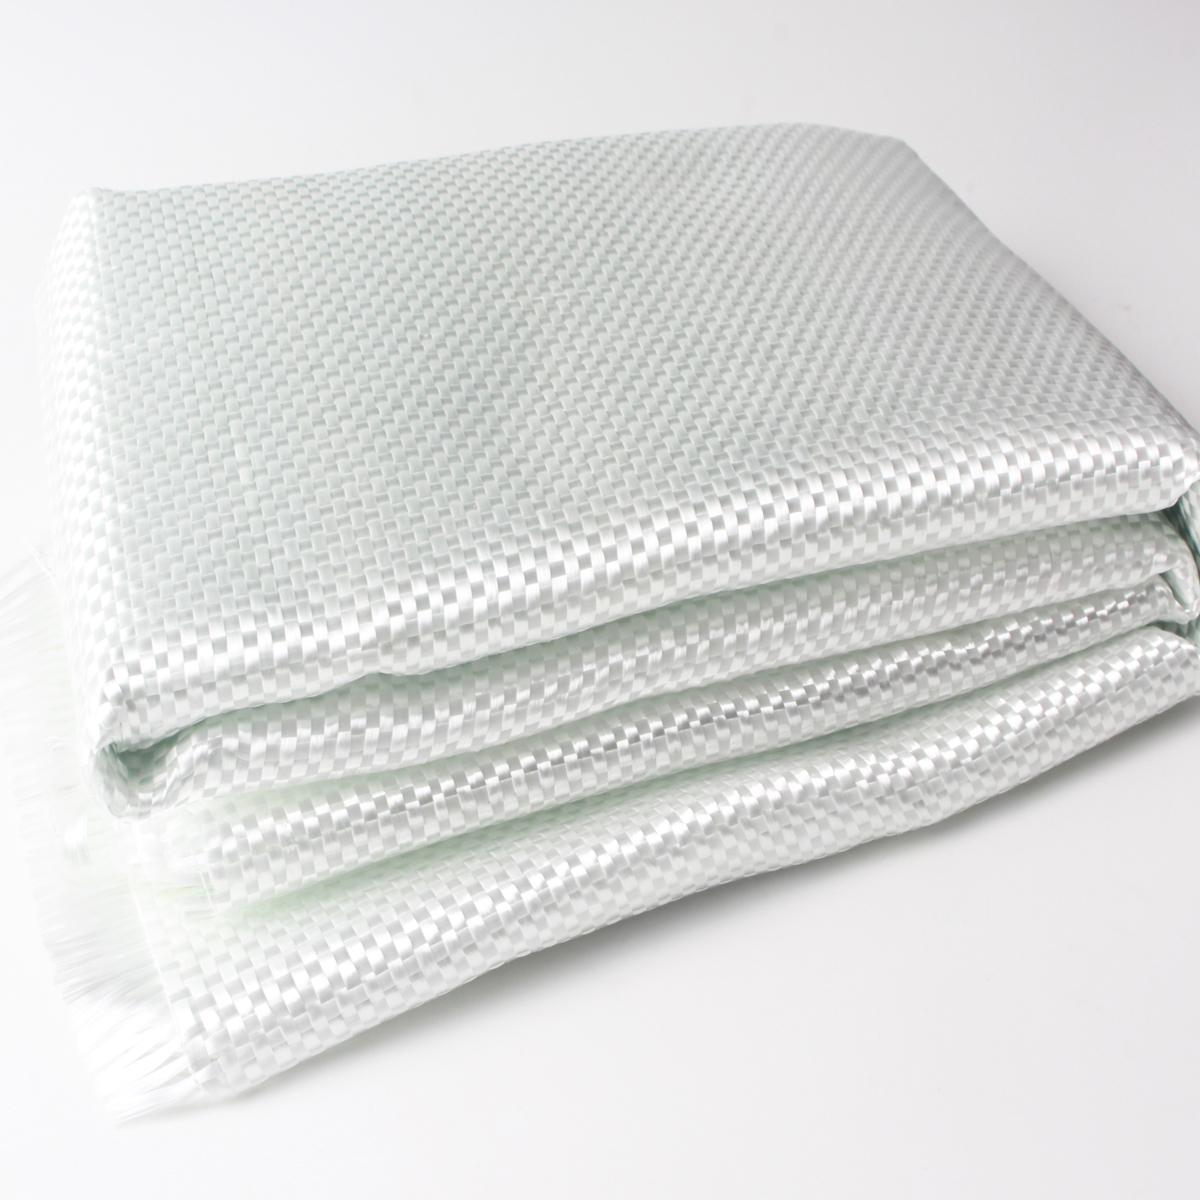 24gsm、55gsm、135gsm、160gsm、200gsm、400gsm E级玻璃纤维布玻璃纤维机织物用于冲浪板